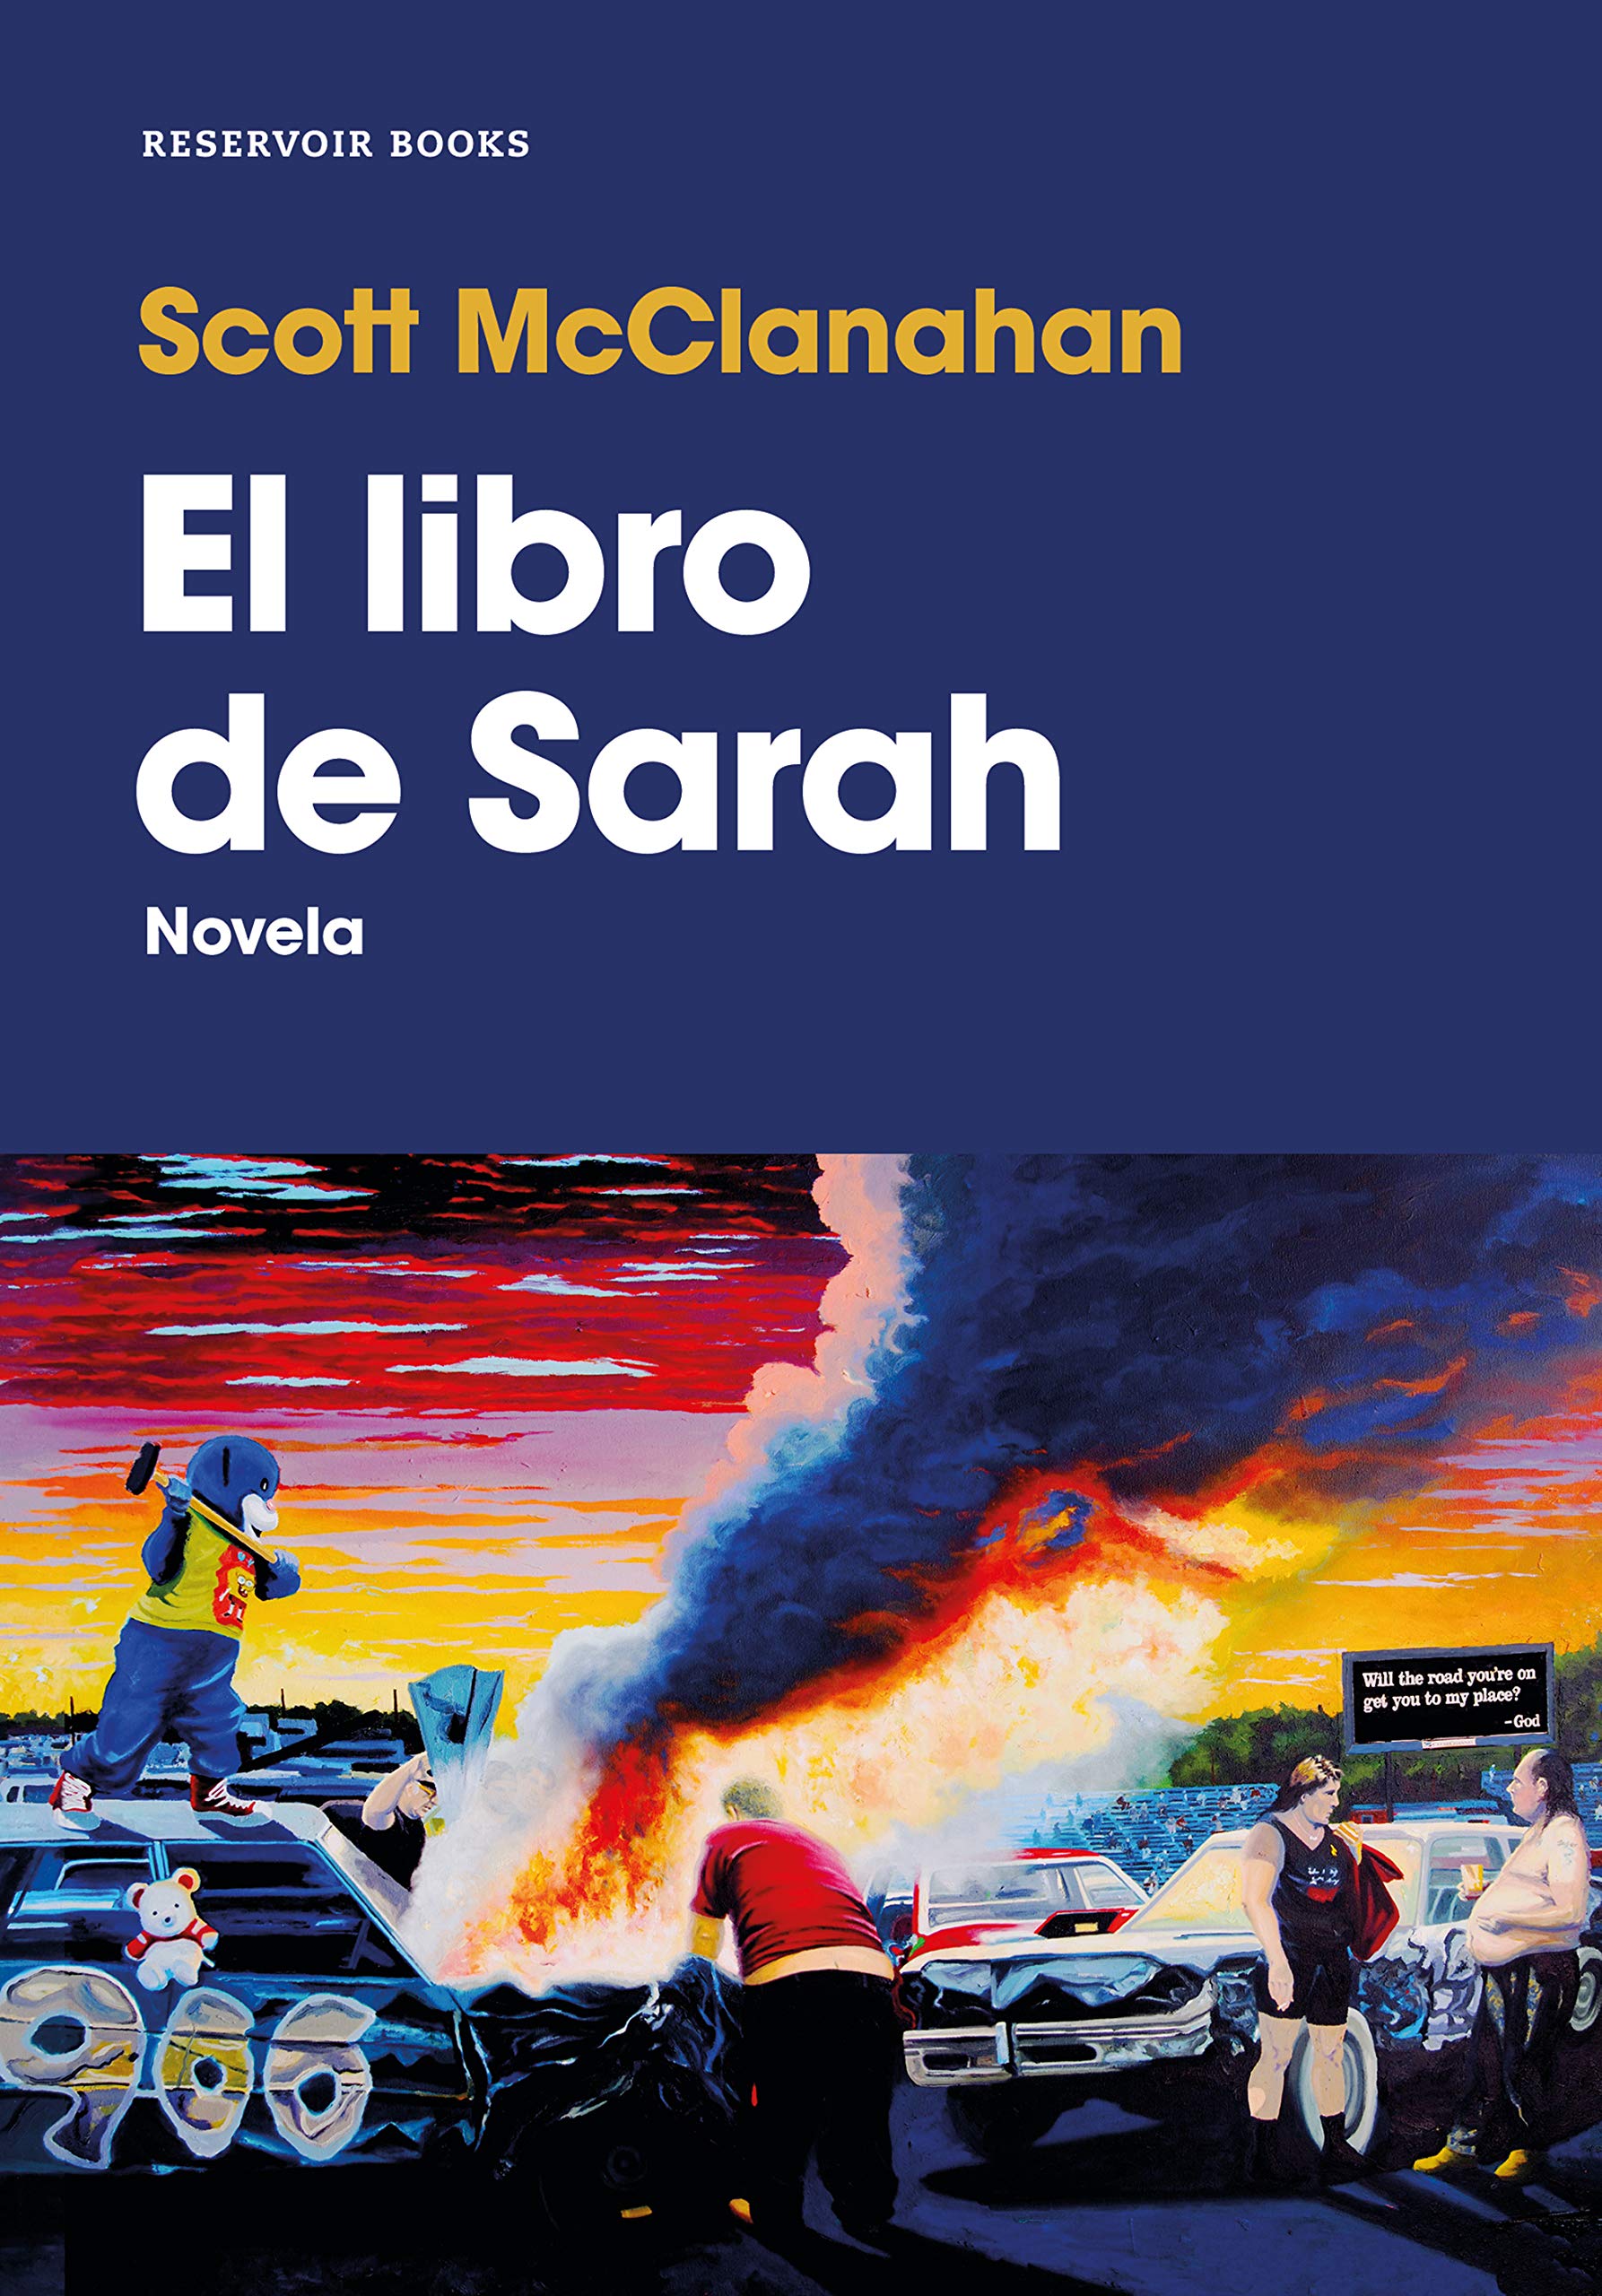 El libro de Sarah, de Scott McClanahan